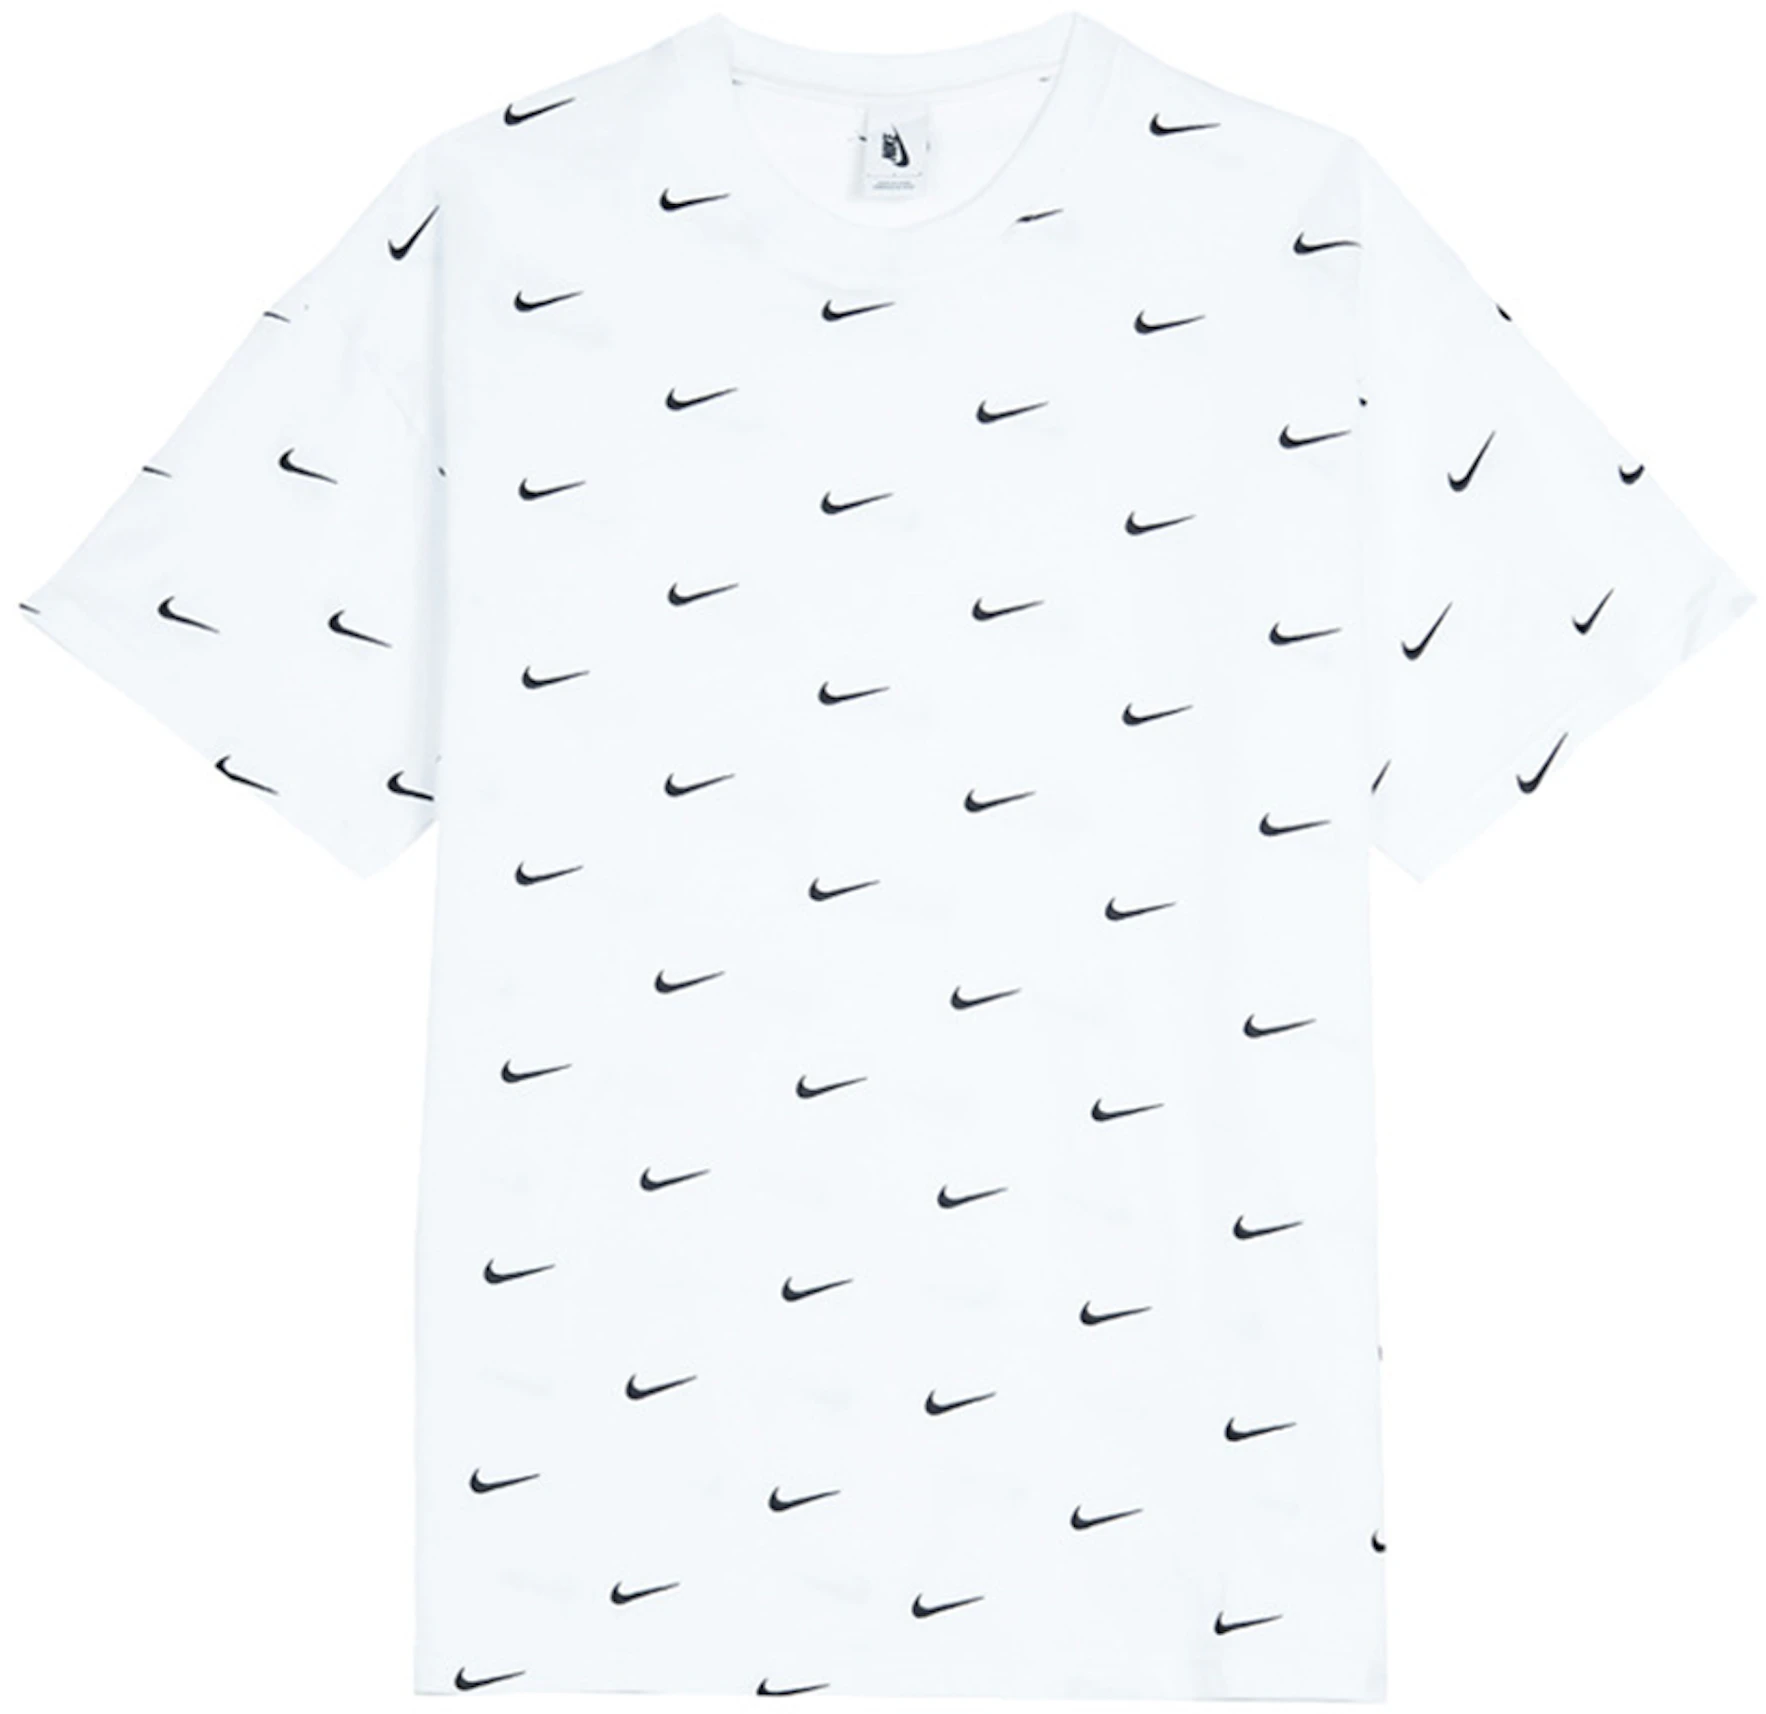 kalligrafie cabine fascisme Nike All Over Swoosh Logo T-Shirt White - FW19 - US